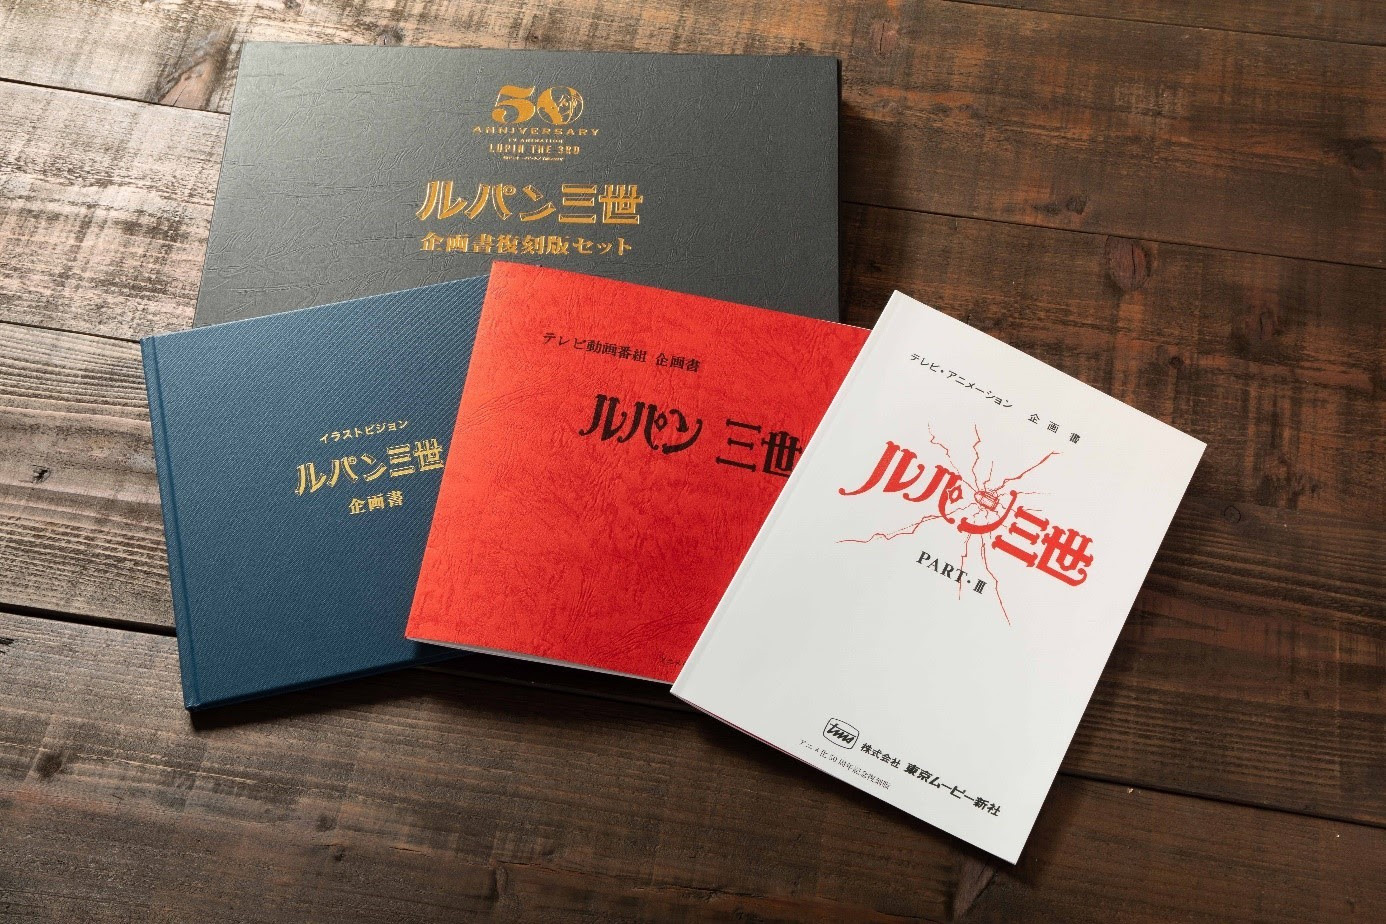 アニメ『ルパン三世』TVシリーズ3作品の企画書セット販売開始 | SPICE